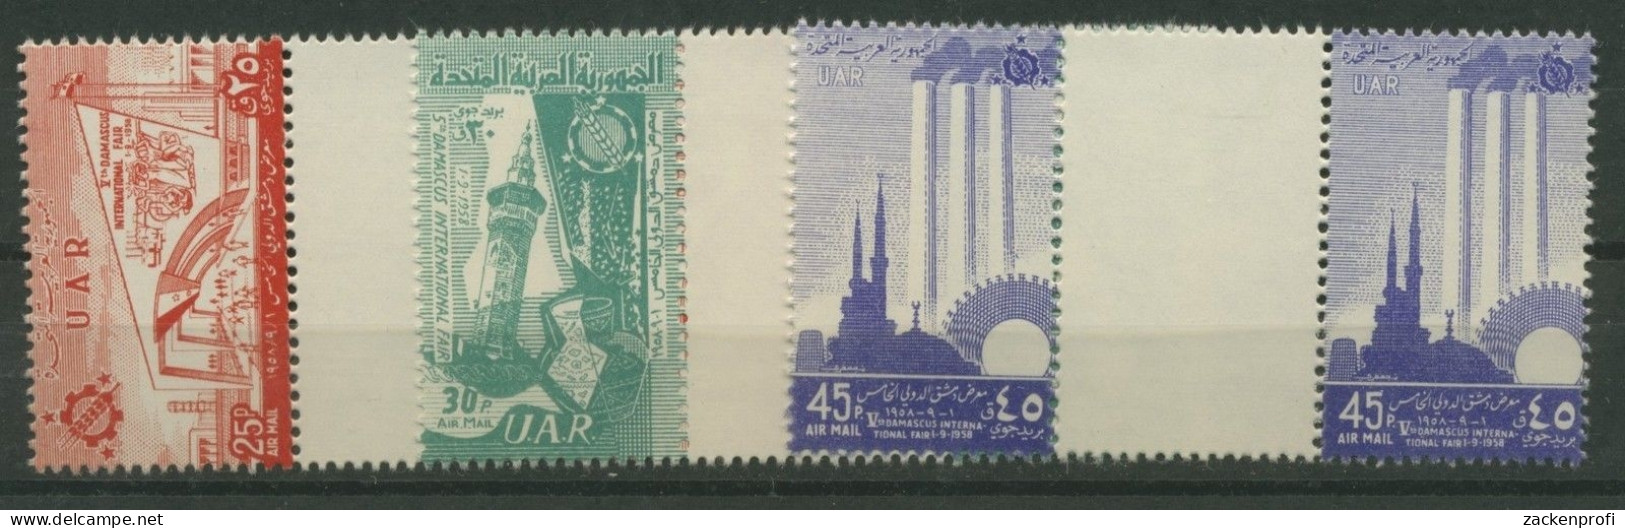 Syrien VAR 1958 Messe Damaskus V9/11 Mit Zwischensteg Postfrisch (G1788) - Syria